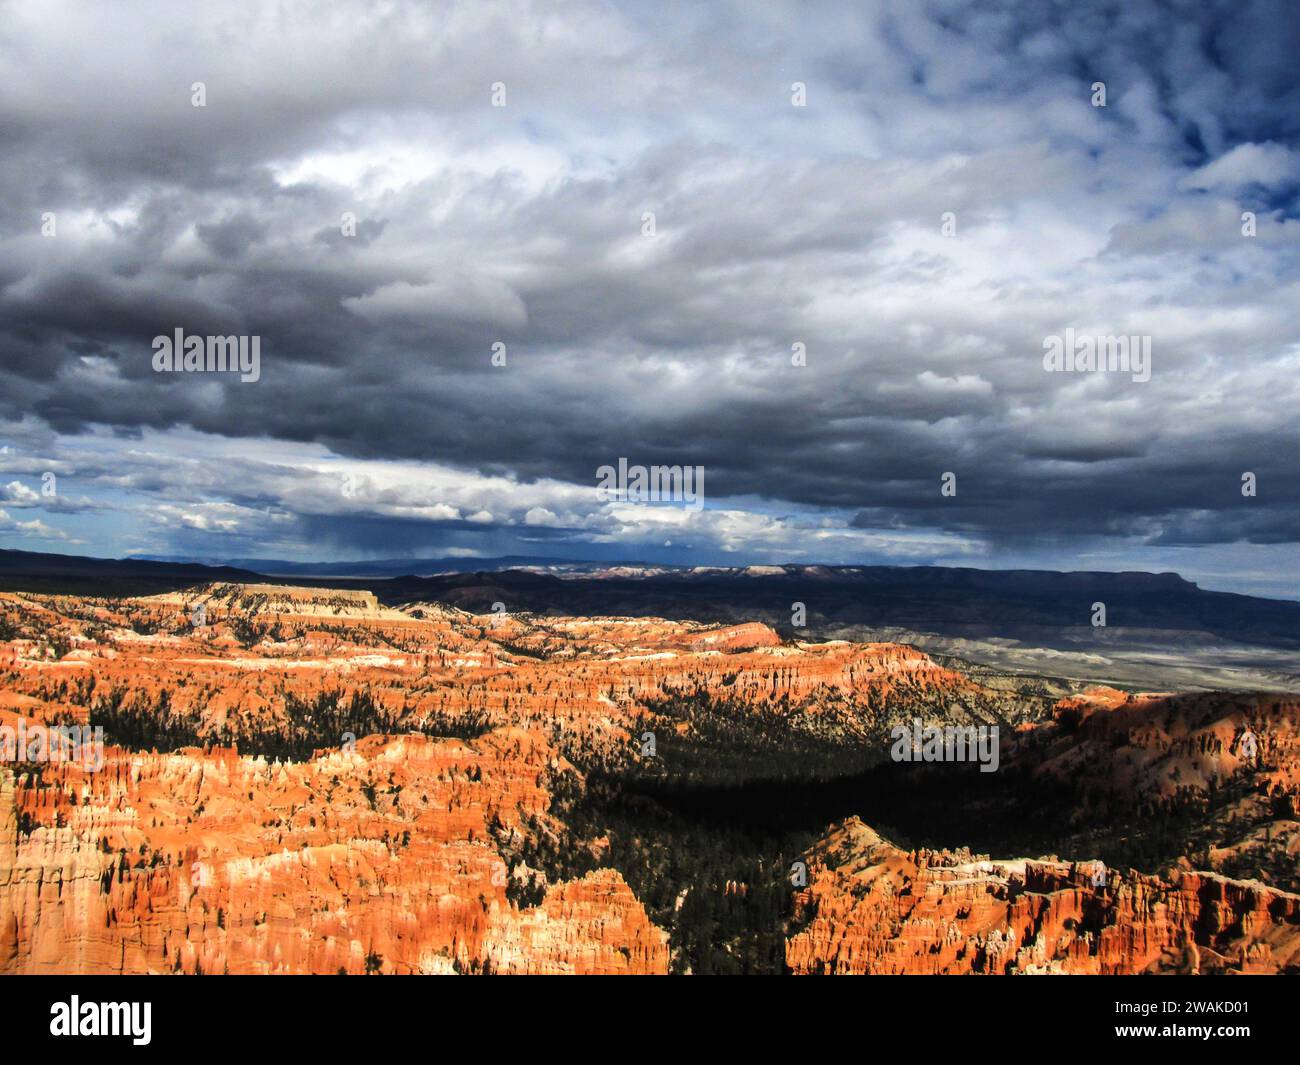 Nuages d'orage au-dessus d'une vallée dans Bryce Canyon avec de la pluie sur les montagnes lointaines Banque D'Images